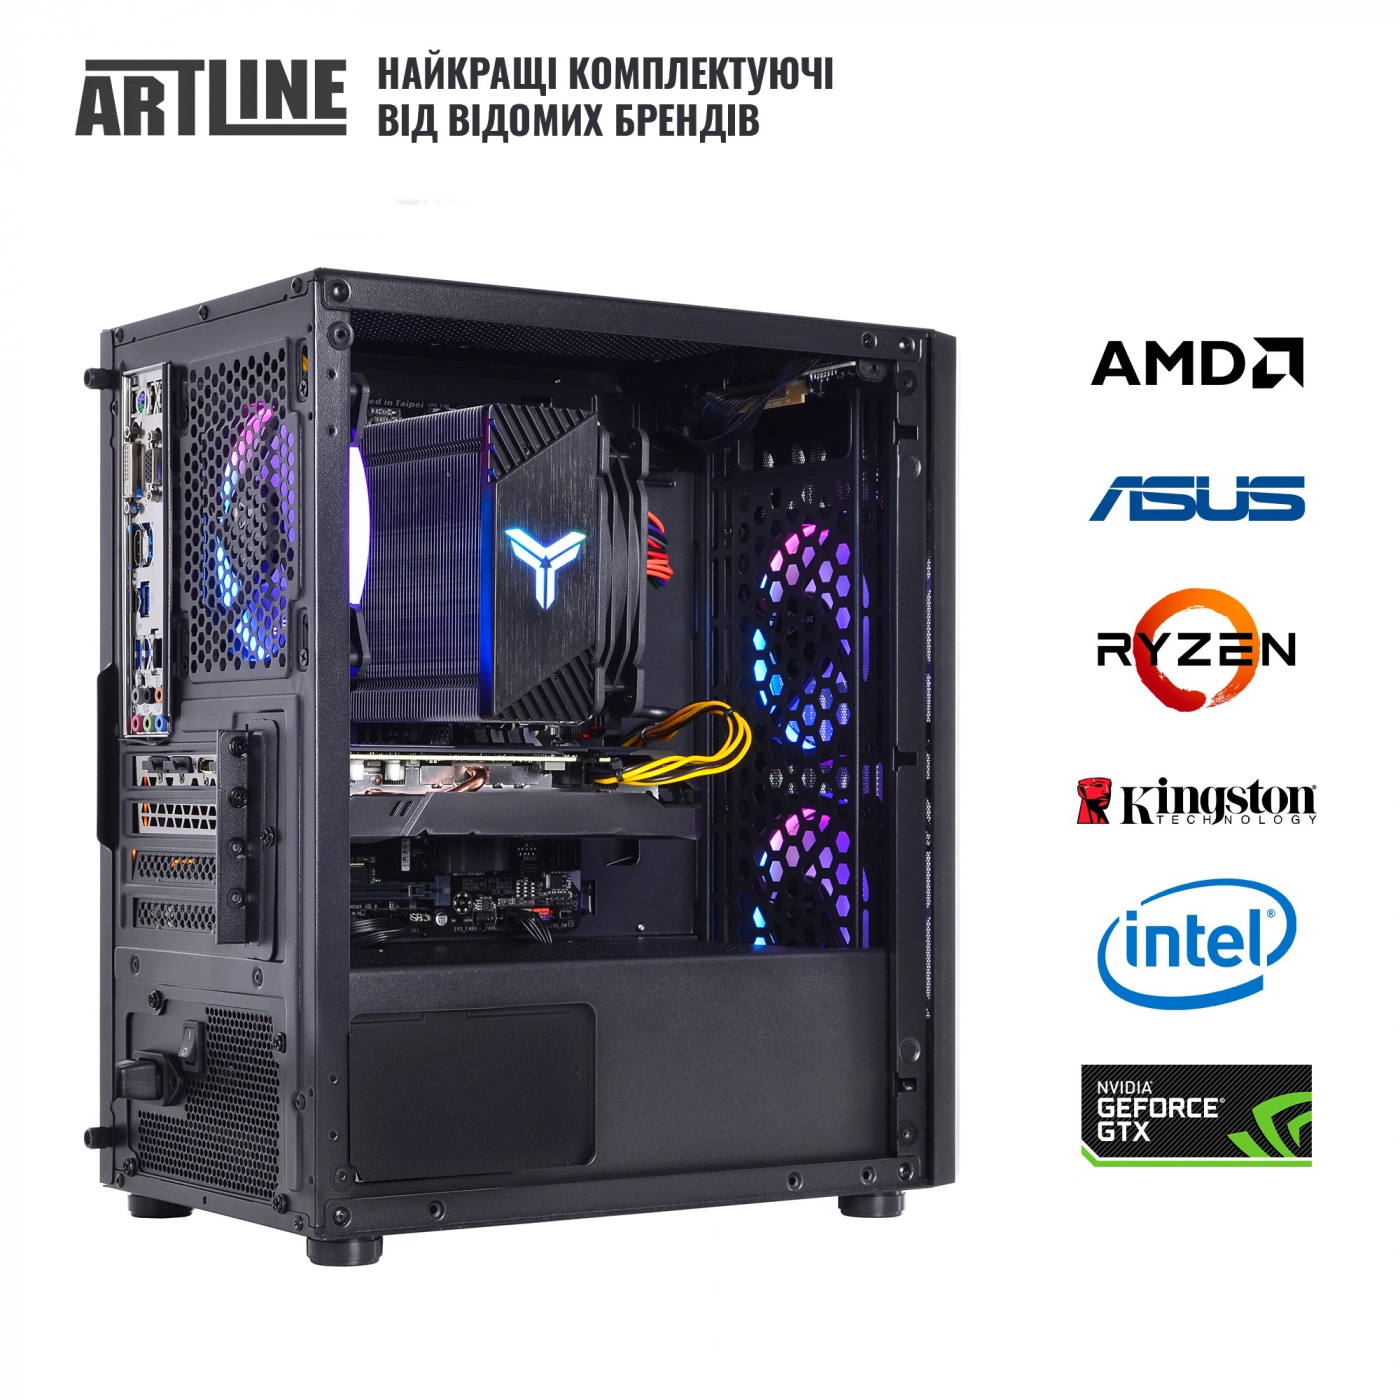 Купить Компьютер ARTLINE Gaming X71v55 - фото 7